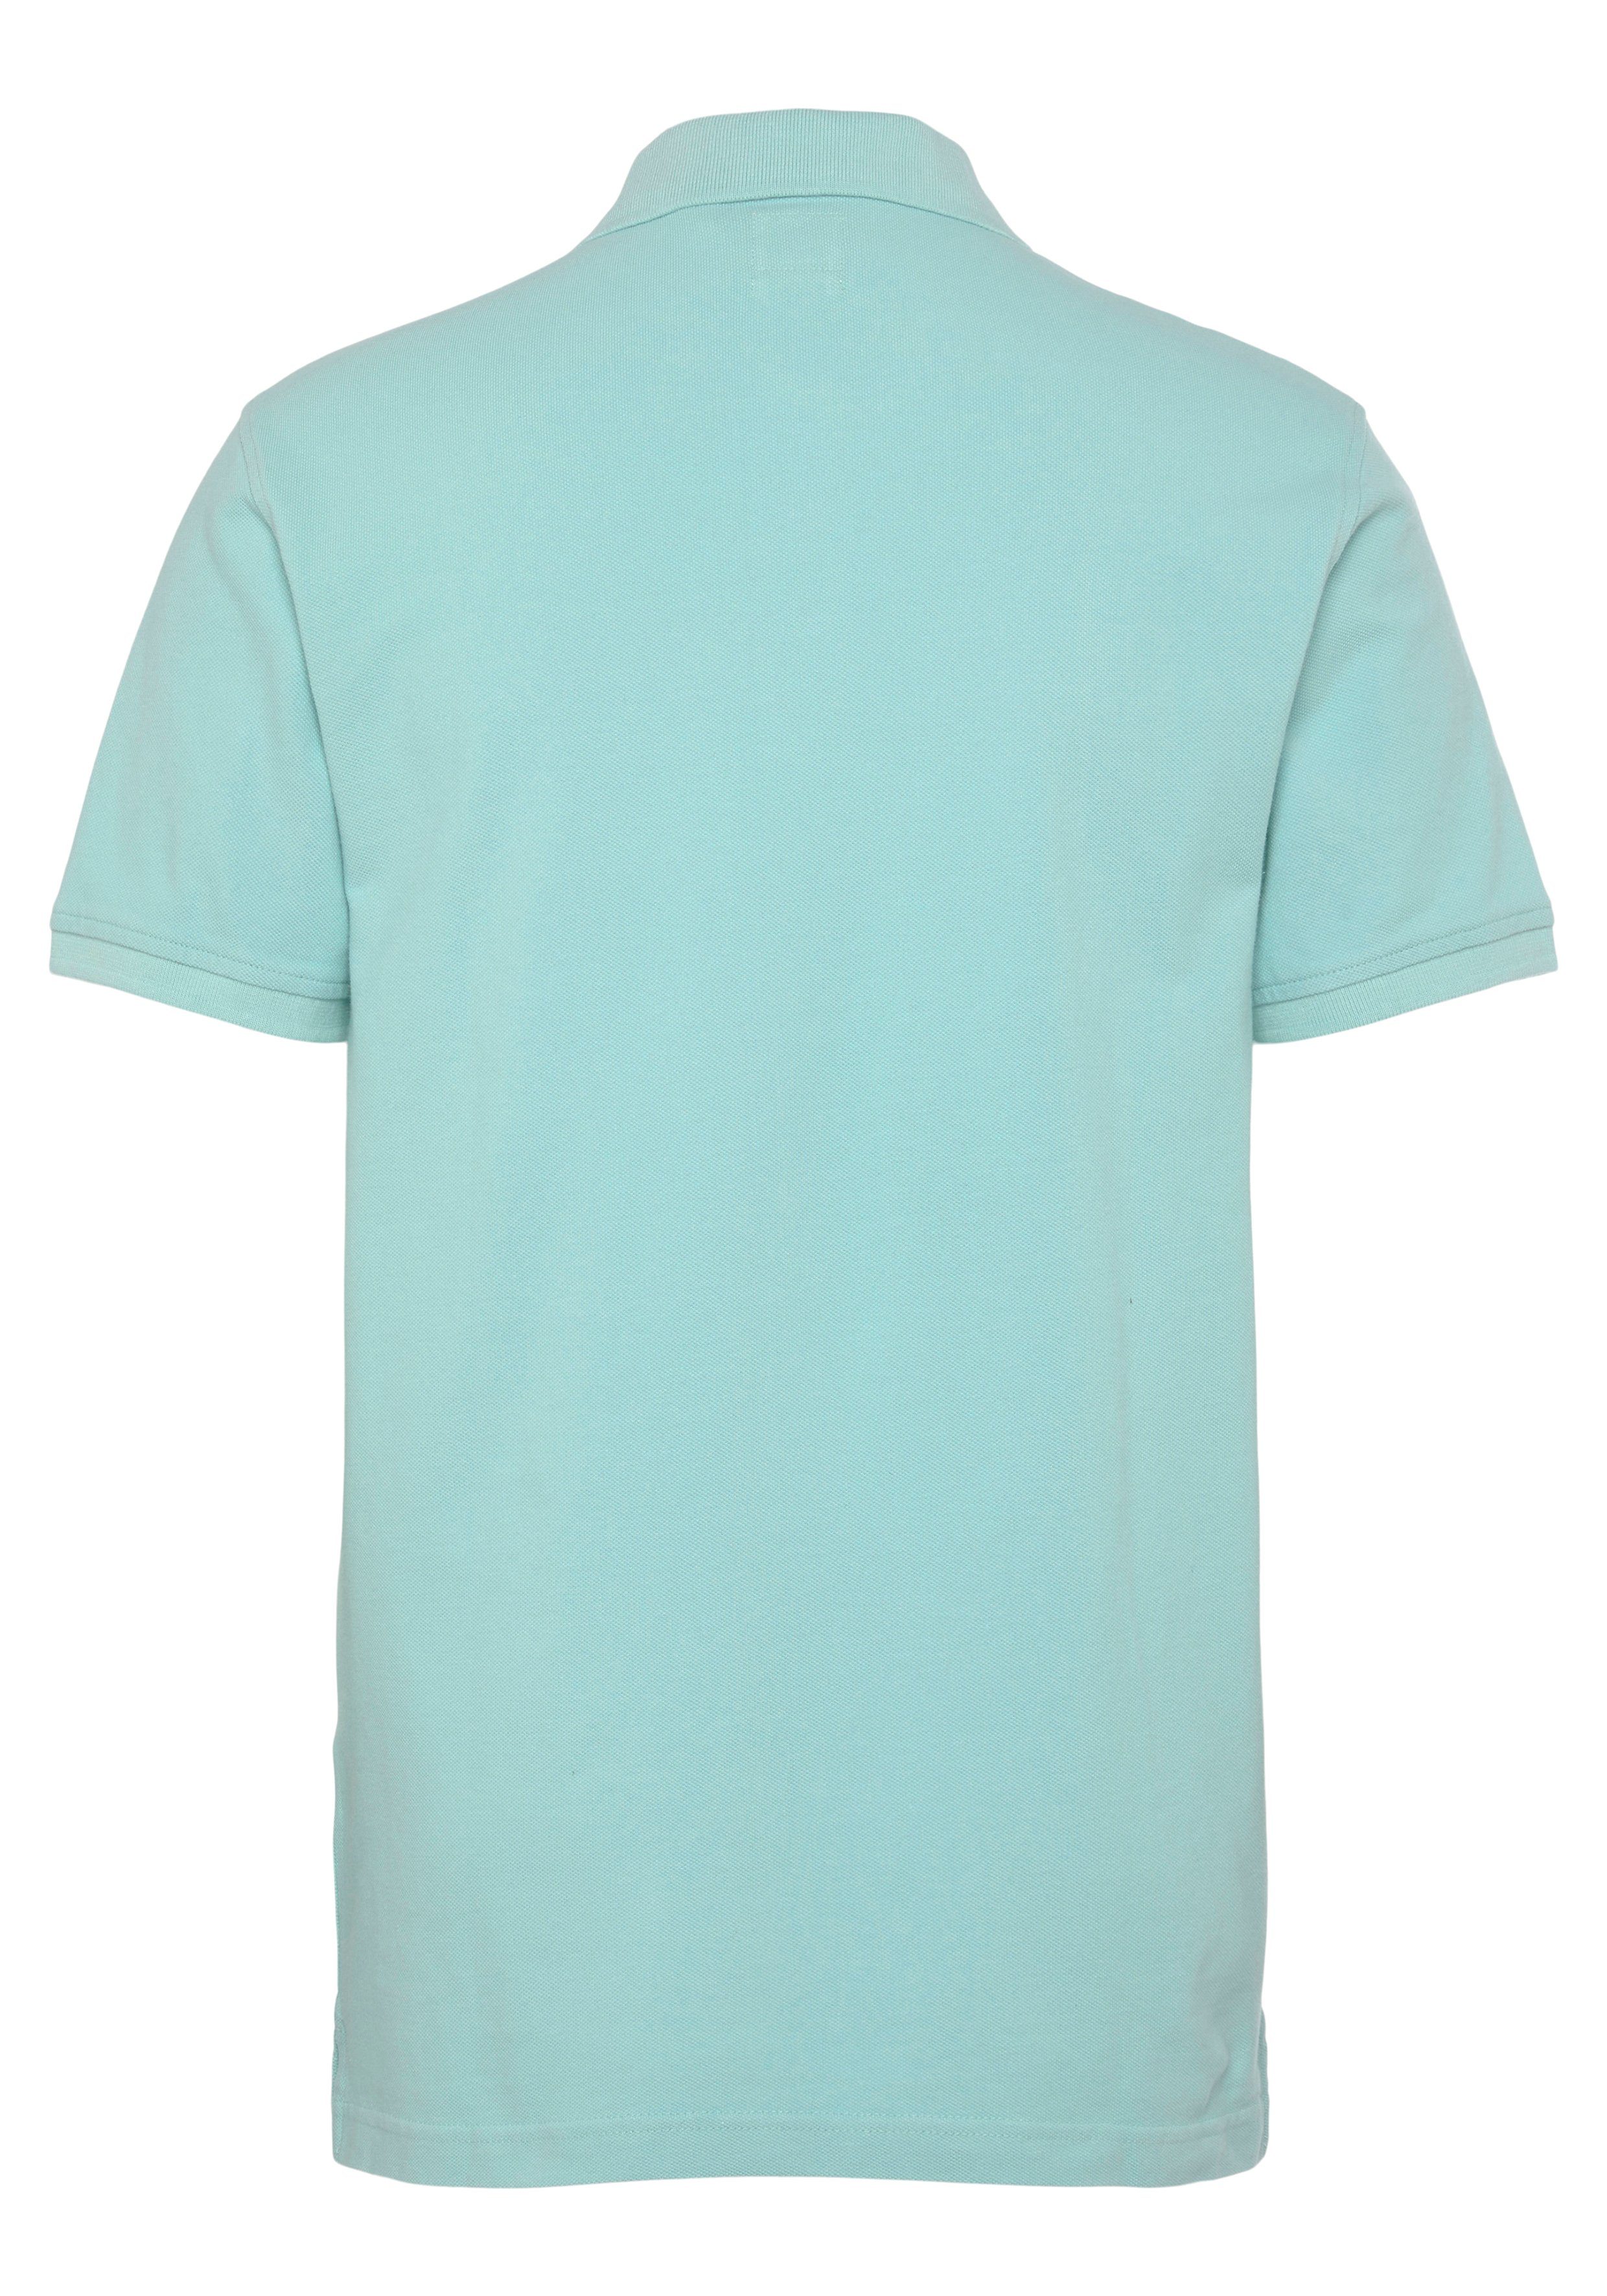 LE LEVIS NEW Batwing-Logo Poloshirt POLO Levi's® mit HM kleinem pastel turquoise